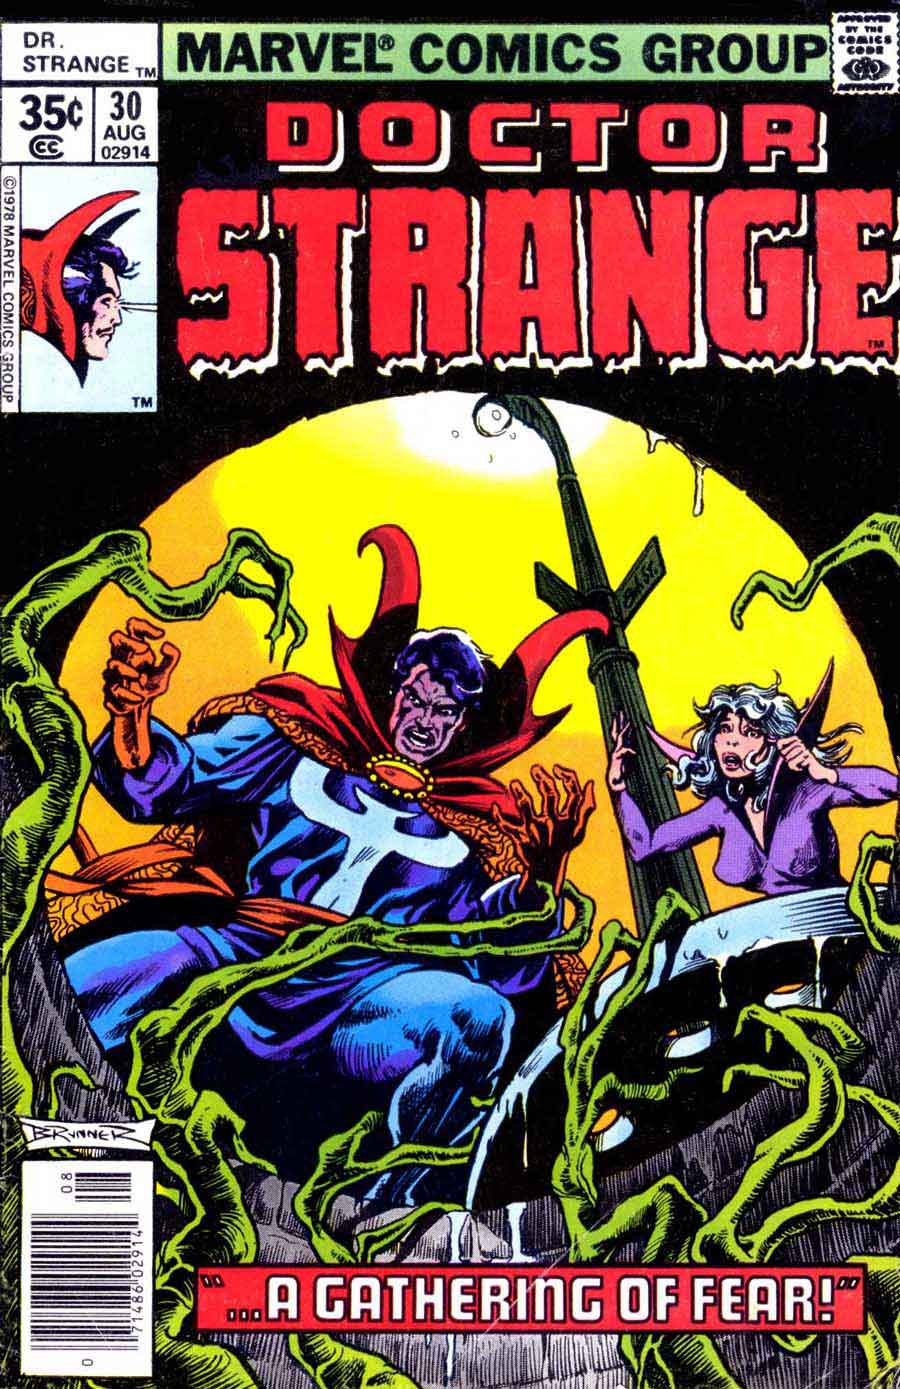 Frank Brunner  bronze age 1970s marvel comic book cover art - Doctor Strange v2 #30